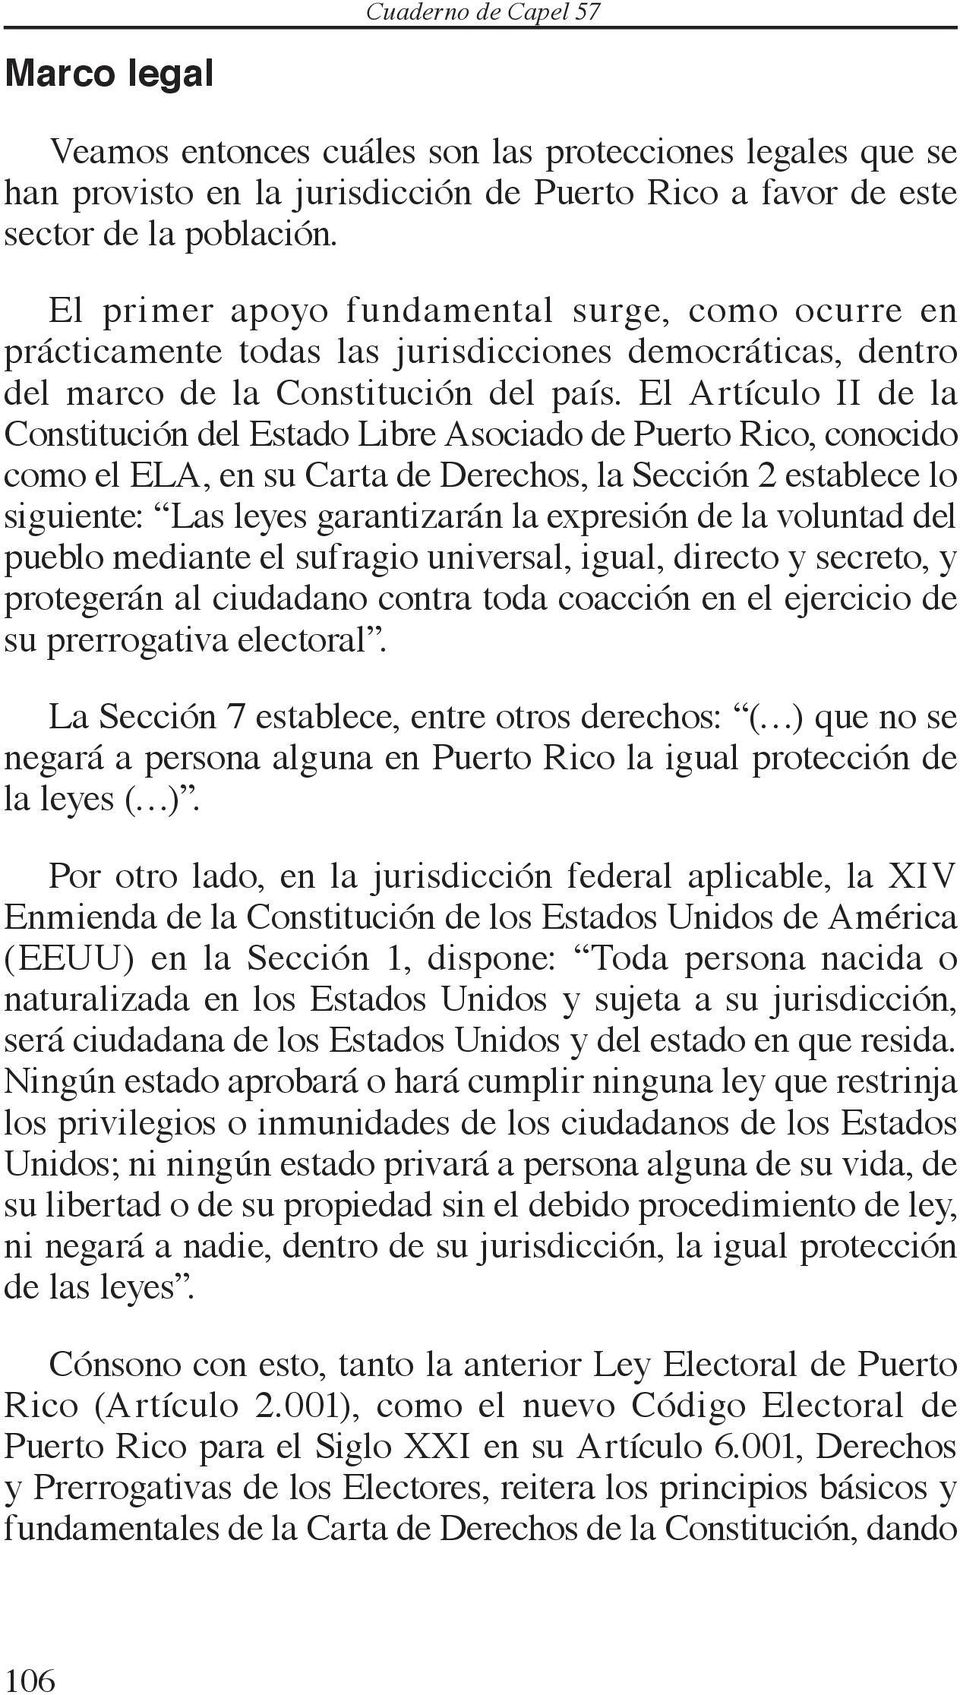 El Artículo II de la Constitución del Estado Libre Asociado de Puerto Rico, conocido como el ELA, en su Carta de Derechos, la Sección 2 establece lo siguiente: Las leyes garantizarán la expresión de